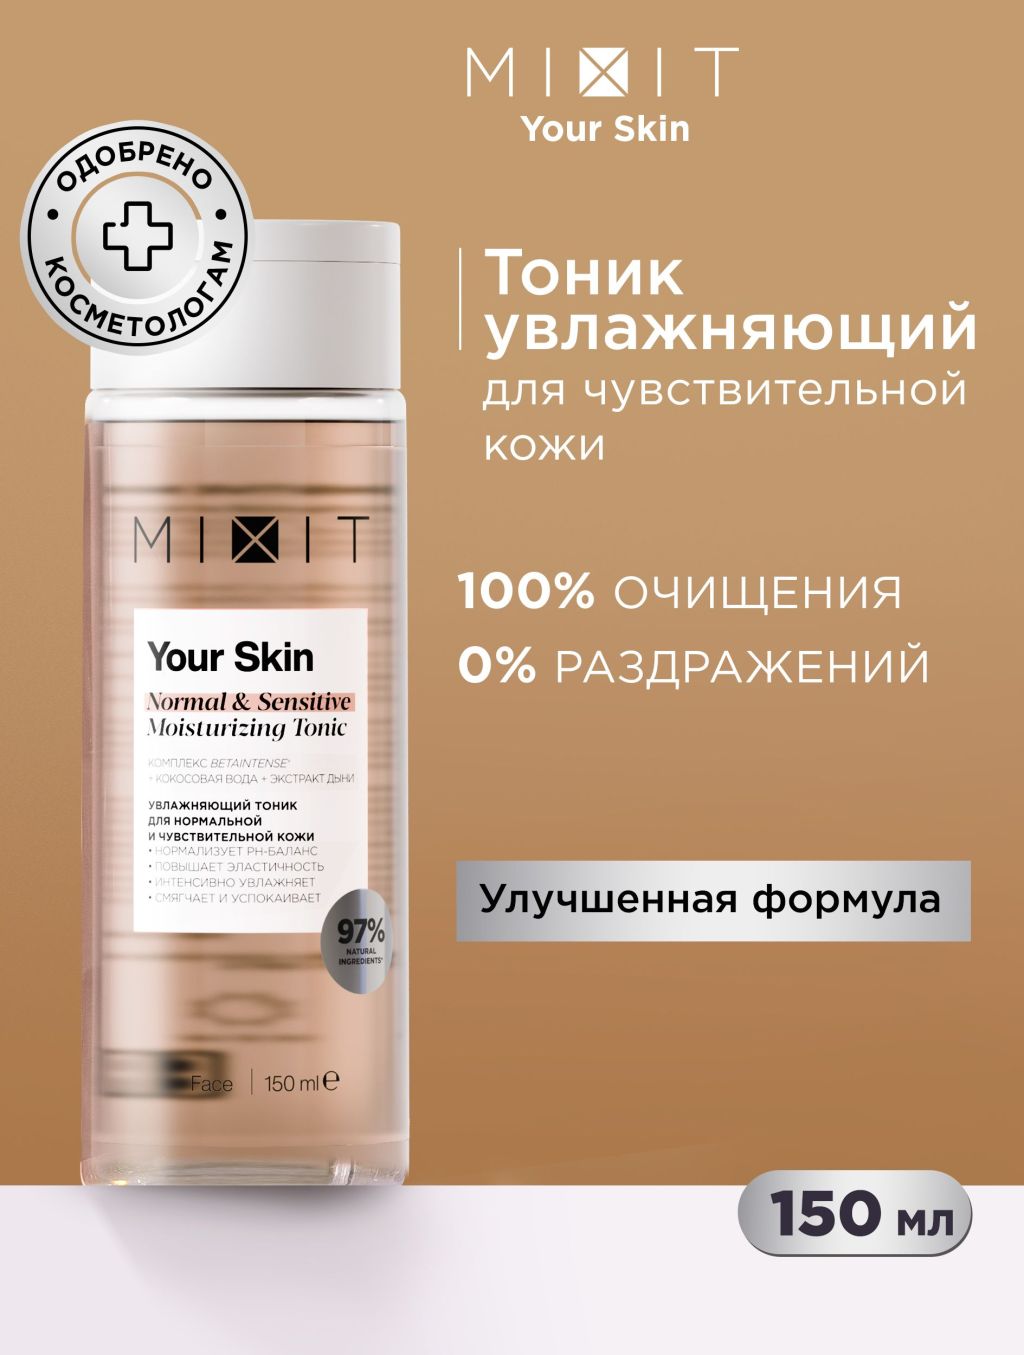 Тоник для лица MIXIT Your Skin увлажняющий, для нормальной и чувствительной кожи, 150 мл dr hauschka тоник интенсивный для ухода за чувствительной кожей intensivkur sensitiv 40 мл